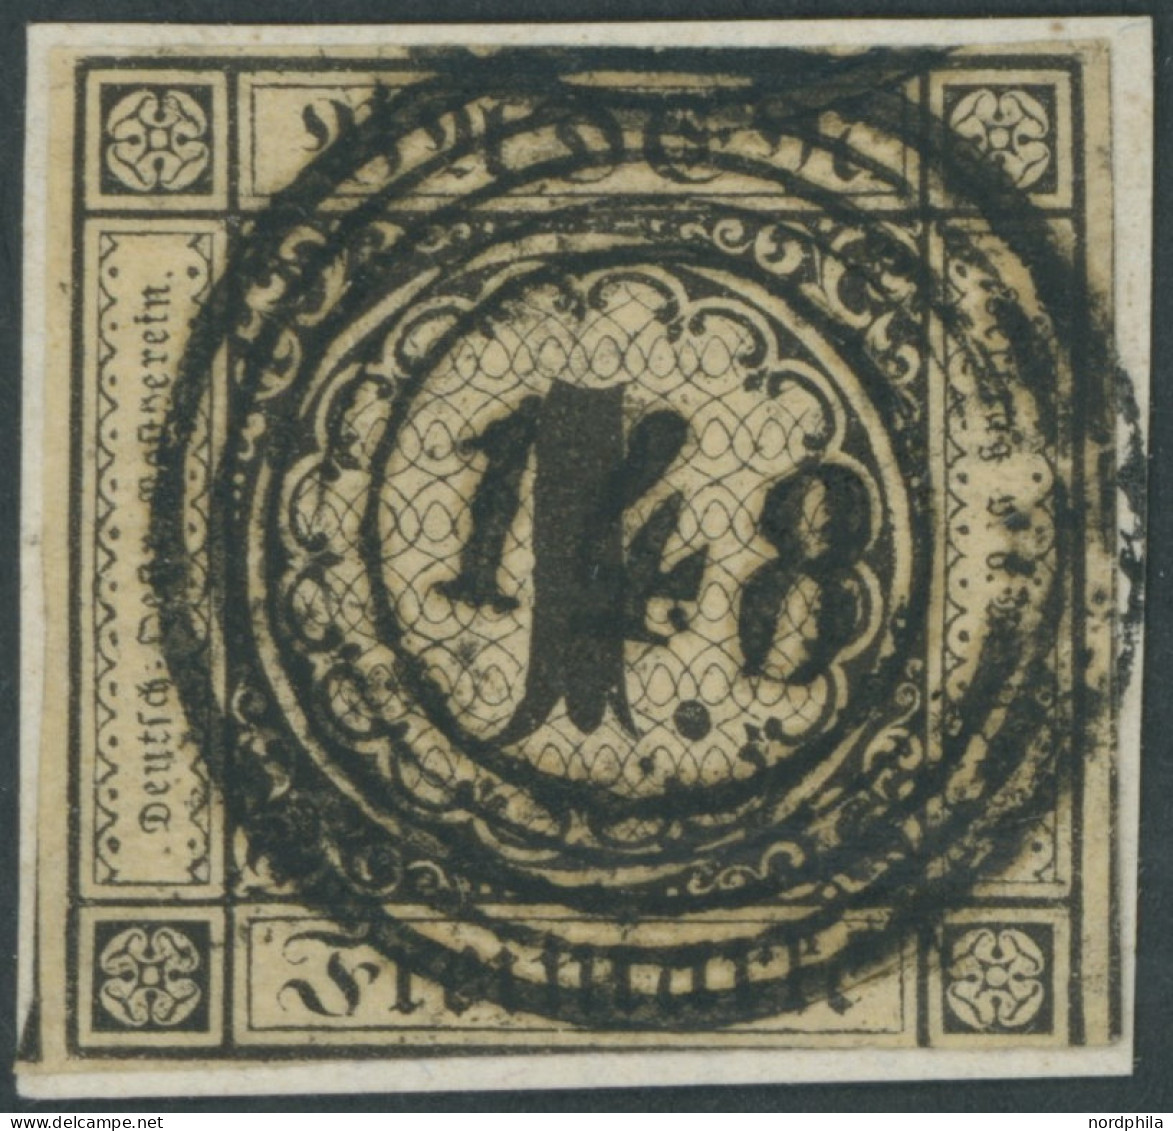 BADEN 1a BrfStk, 1851, 1 Kr. Schwarz Auf Sämisch, Zentrischer Nummernstempel 148, Unten Teils Etwas Angeschnitten Sonst  - Afgestempeld